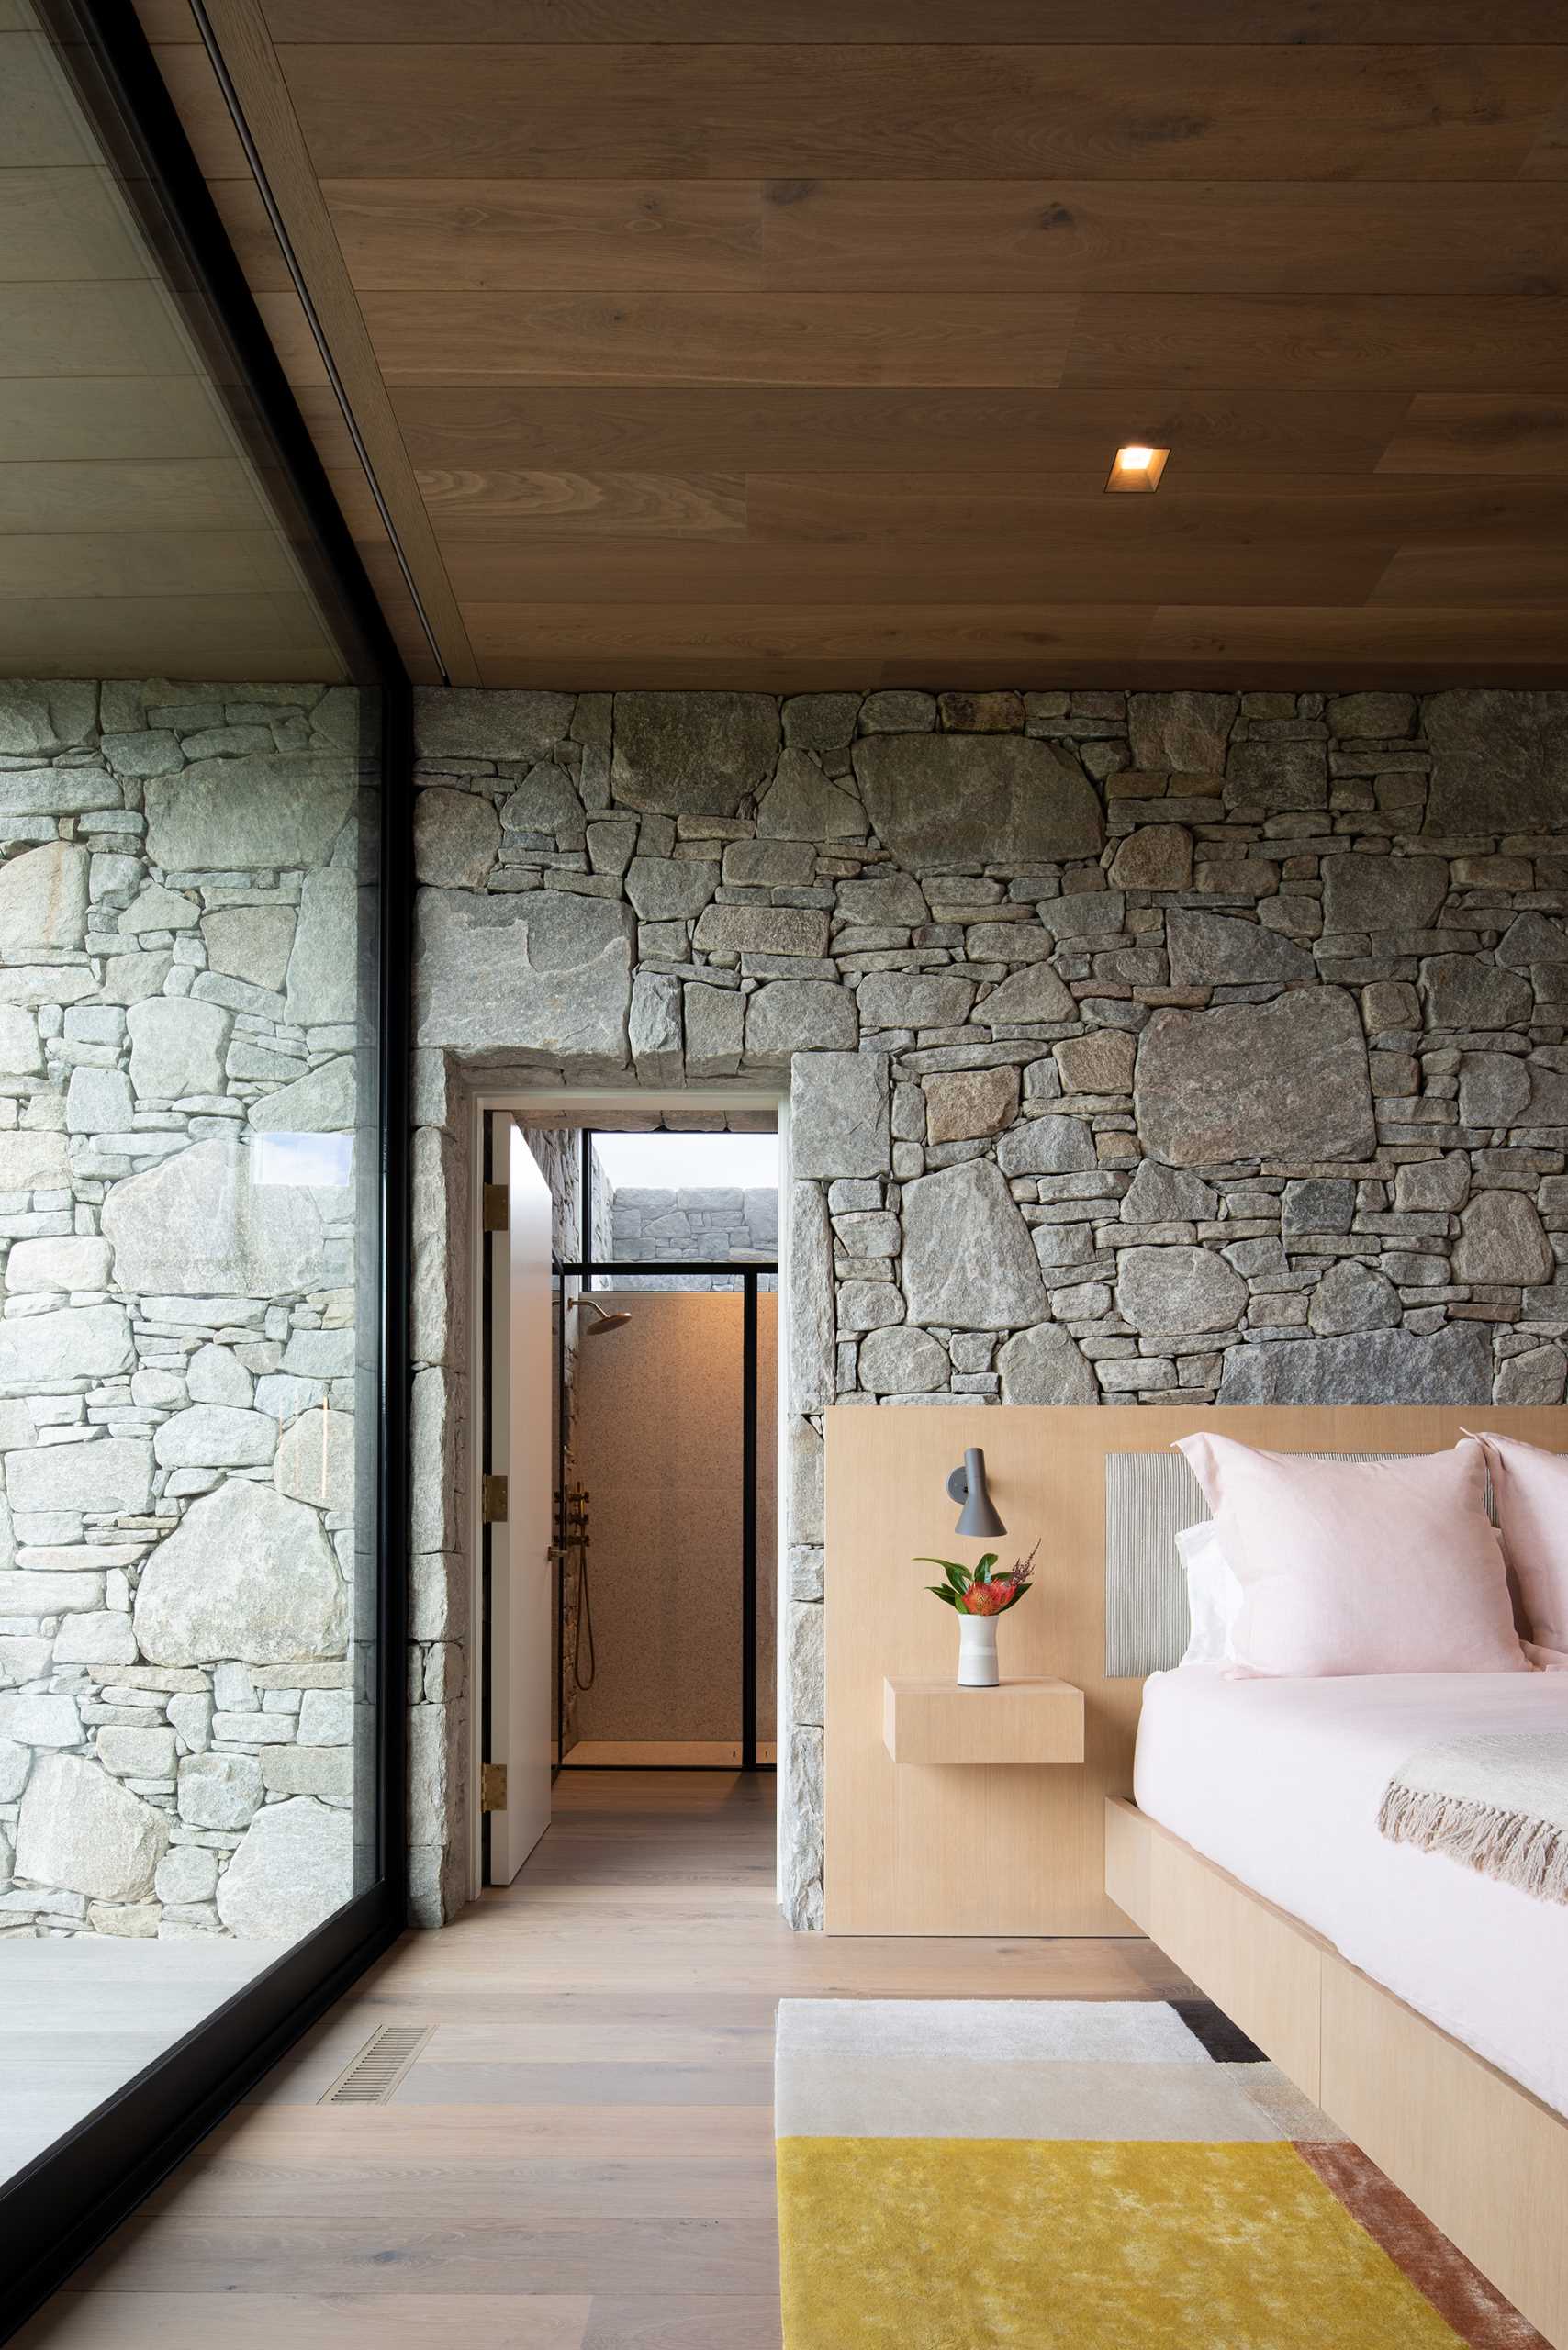 یک اتاق خواب مدرن با دیوارهای سنگی، سقف چوبی و پنجره های بزرگ.